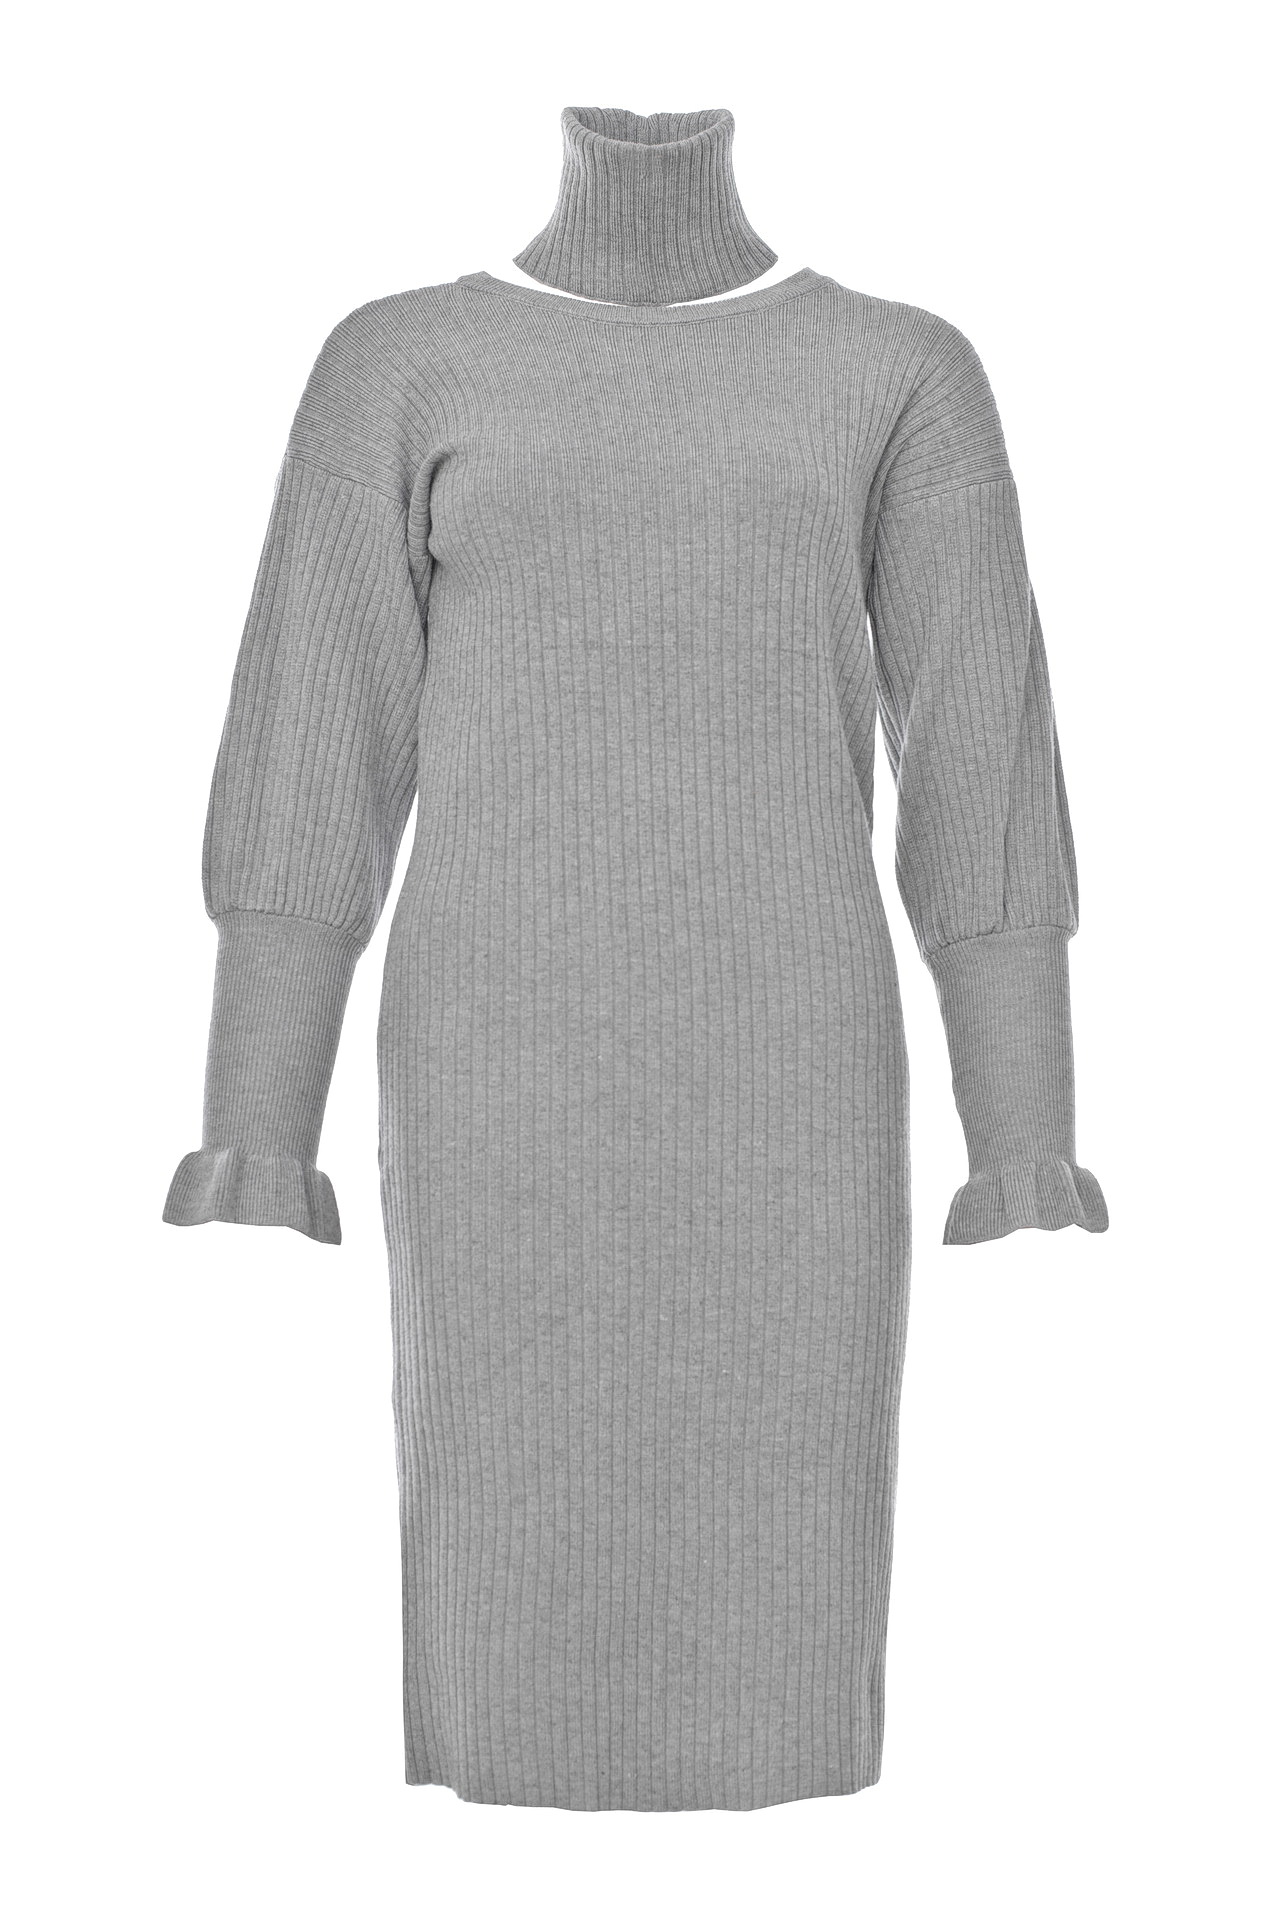 Одежда женская Платье LETICIA MILANO (20181022/18.1). Купить за 6900 руб.